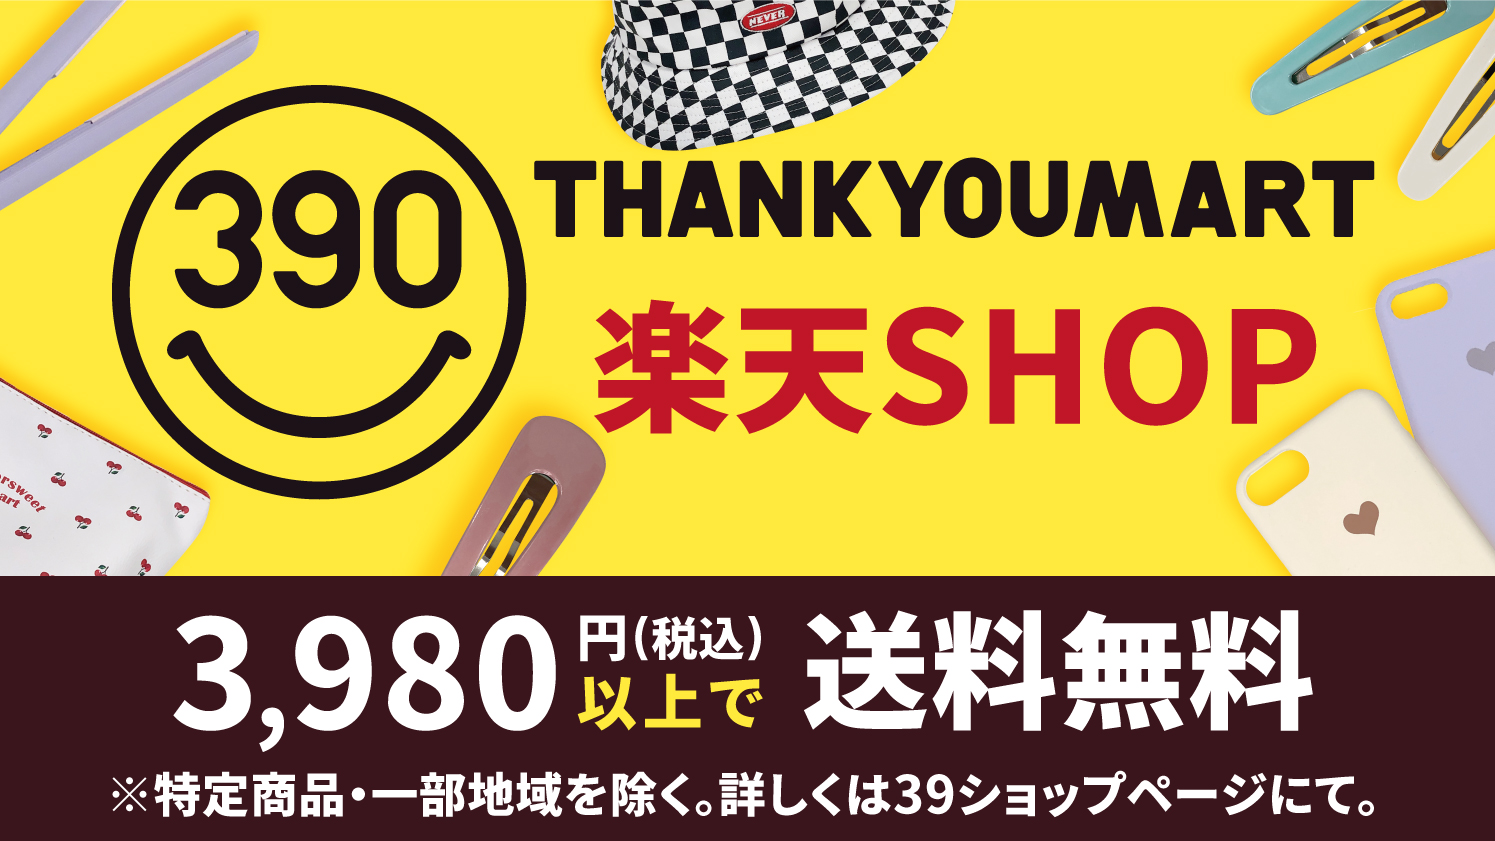 サンキューマート楽天shopが3 980円以上購入で送料無料 newscast